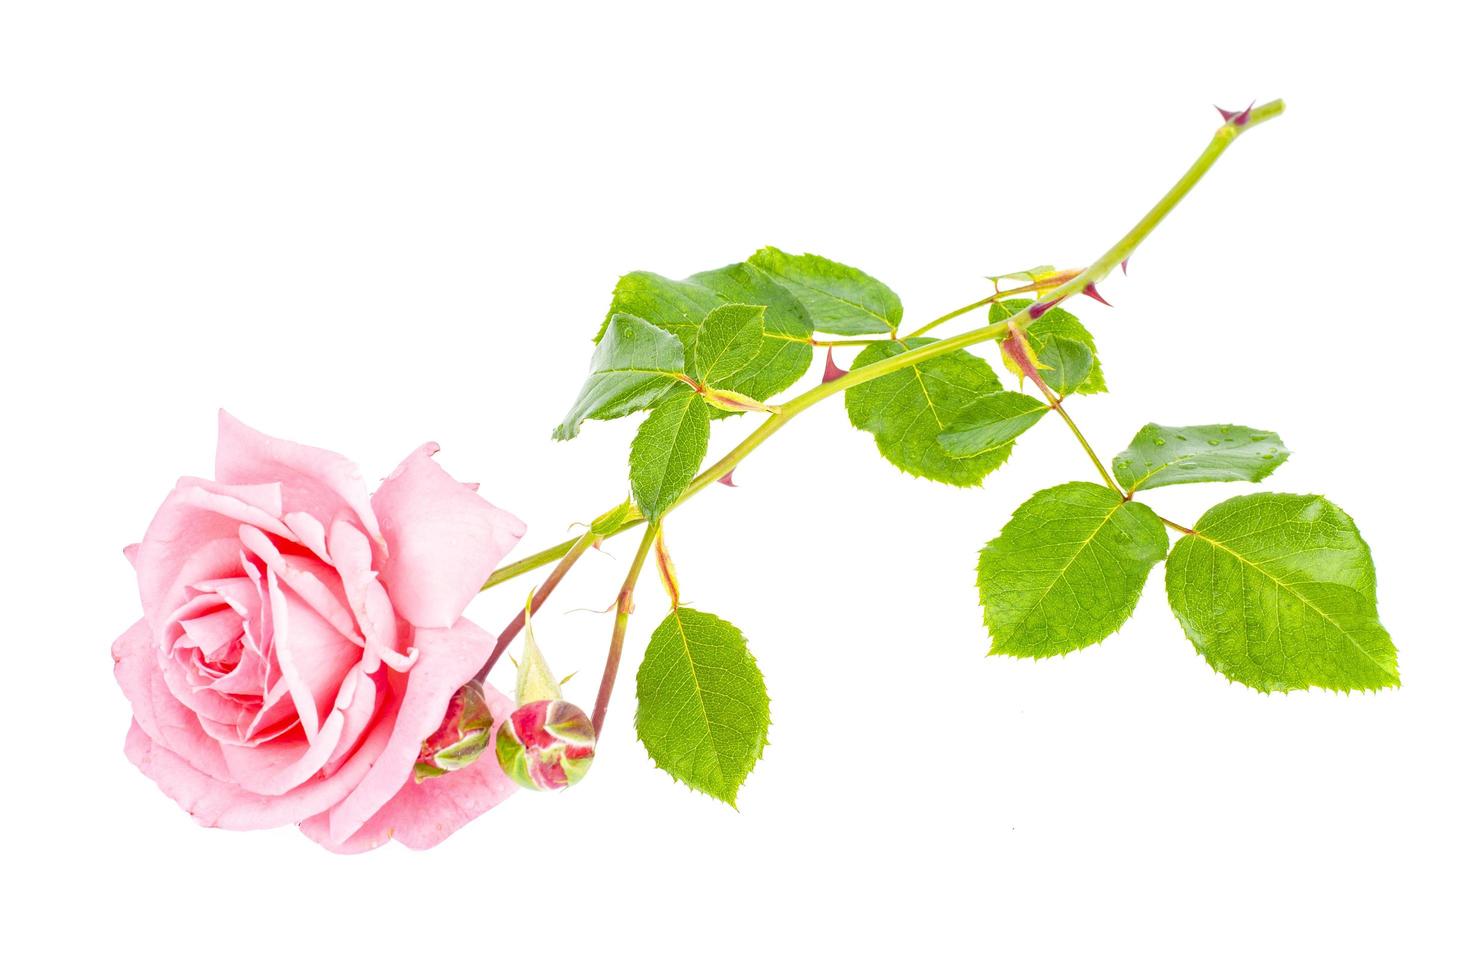 enkele tedere roze roos geïsoleerd op een witte achtergrond. foto